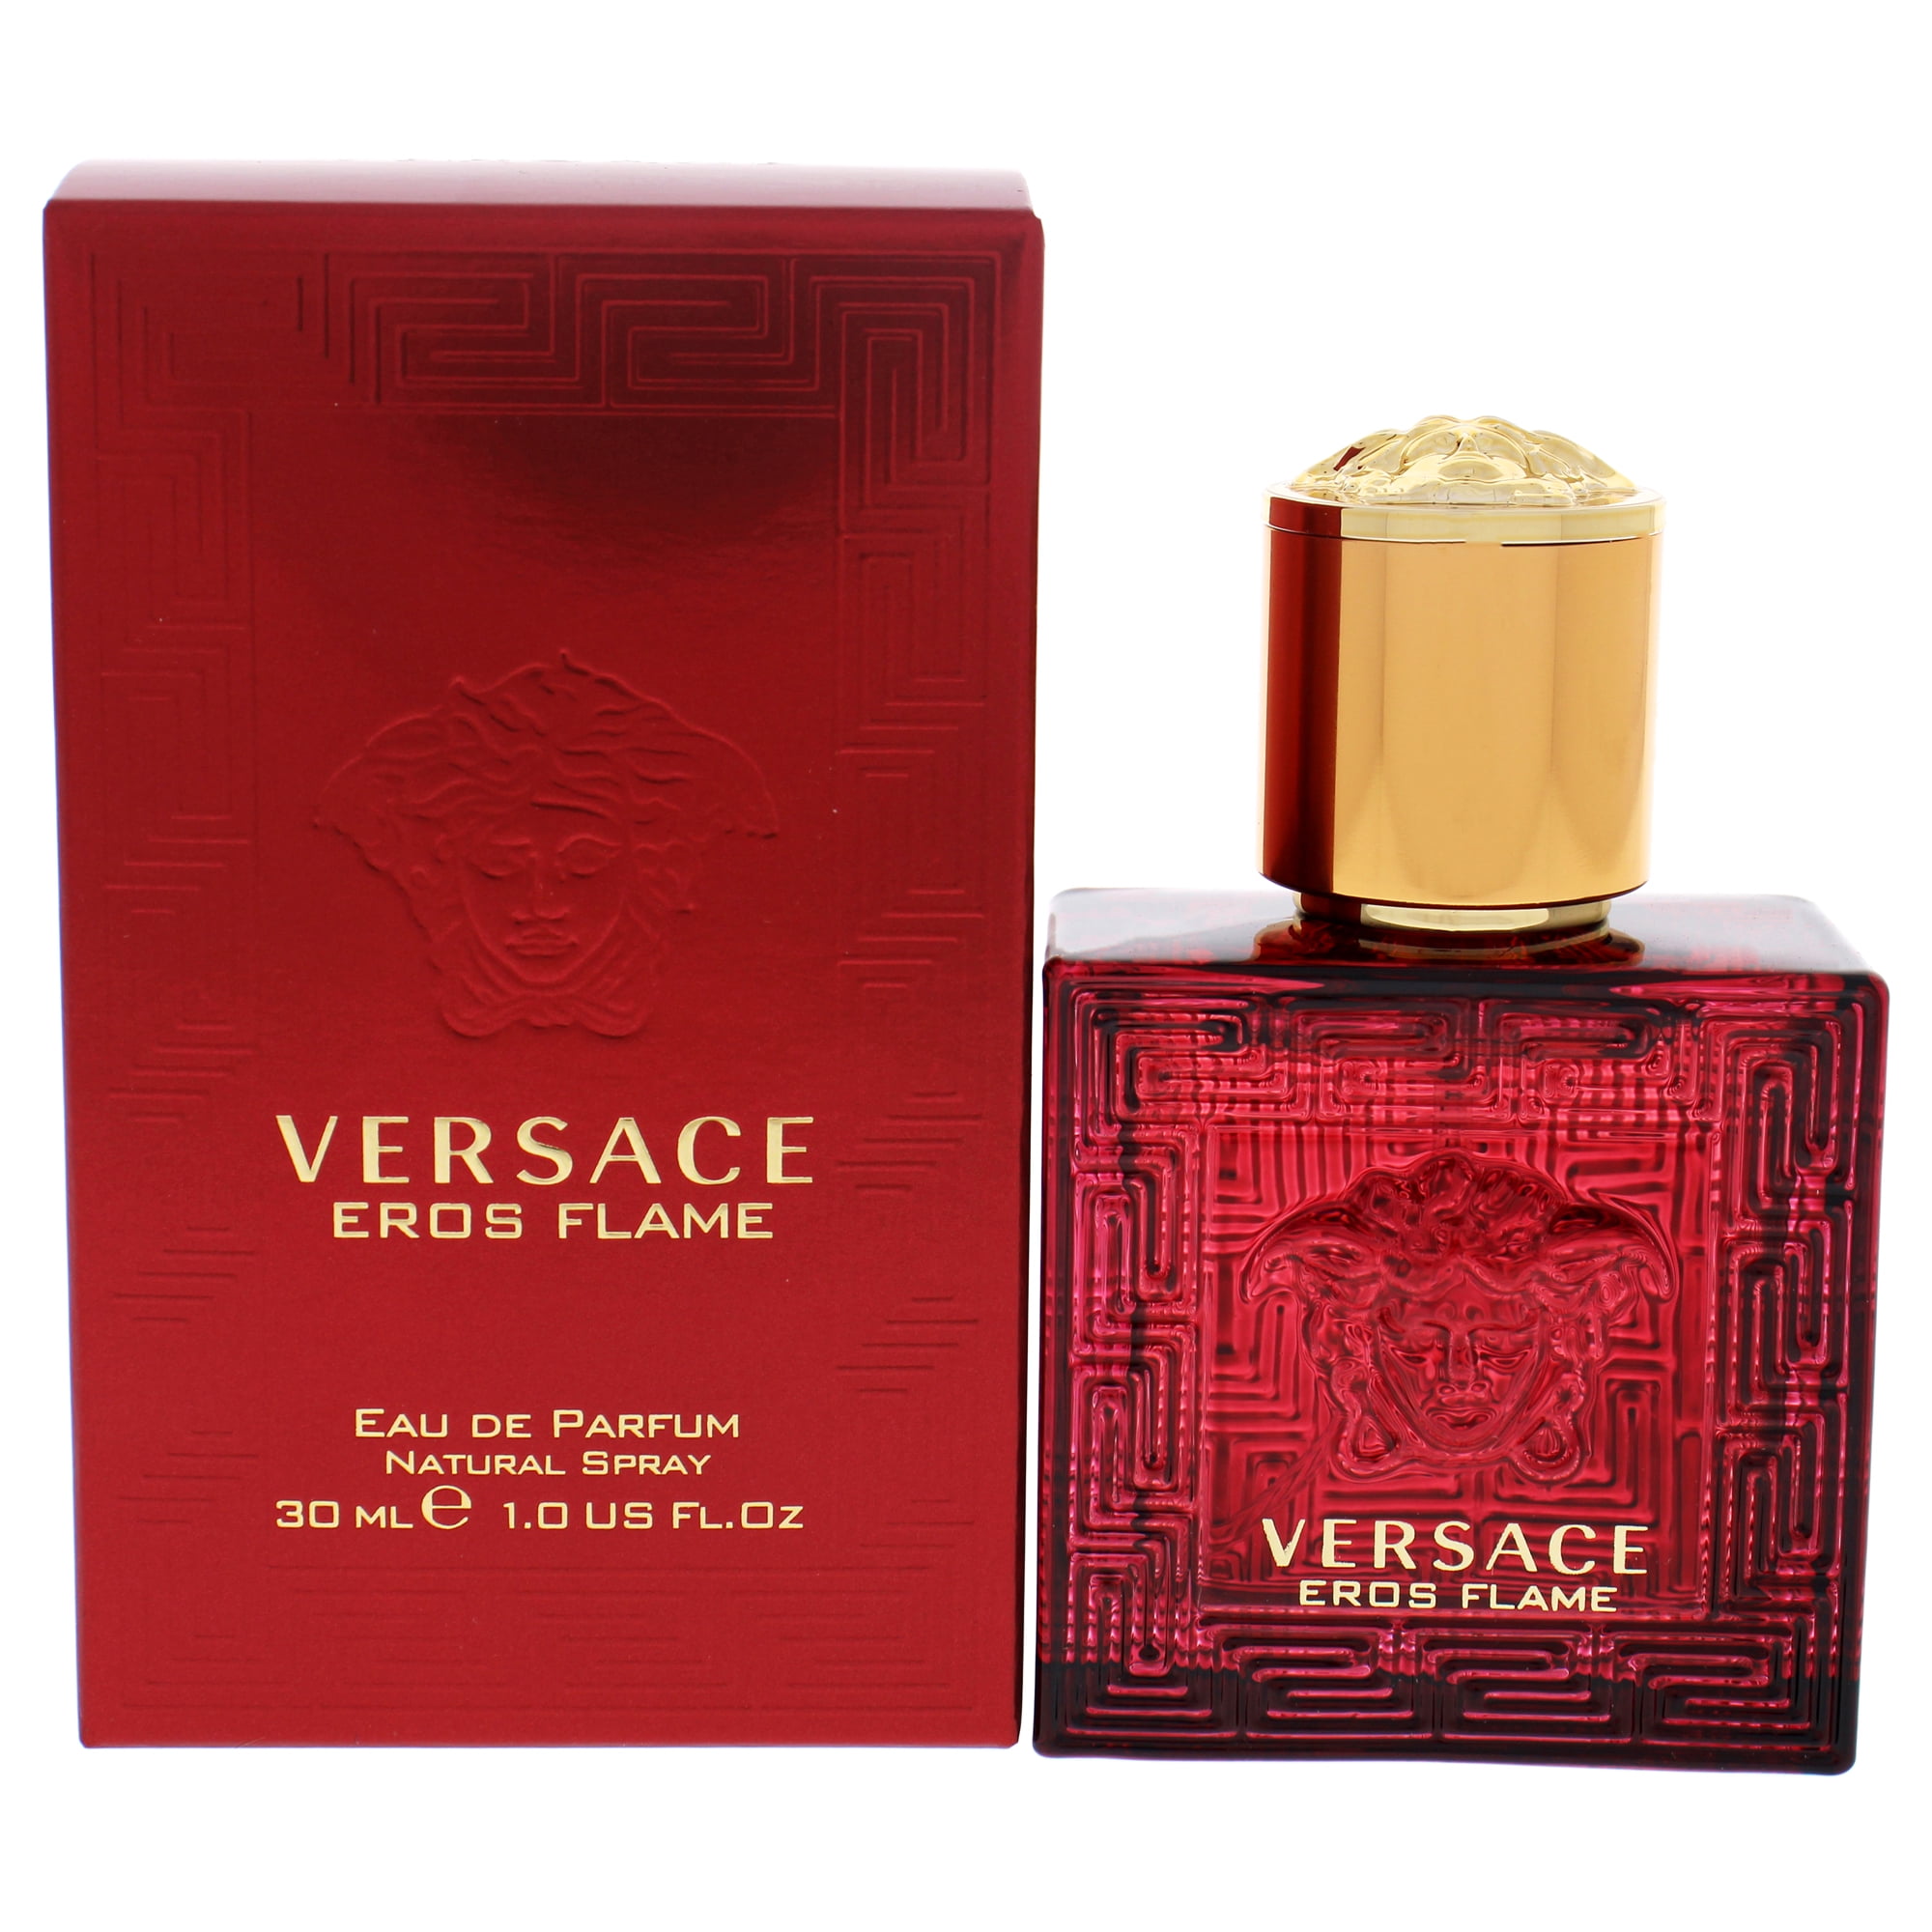 Версаче флейм. Versace Eros Flame 30 мл. Versace Eros Flame Eau de Parfum. Eros Flame Versace 100 мл. Парфюм Versace Eros Flame.